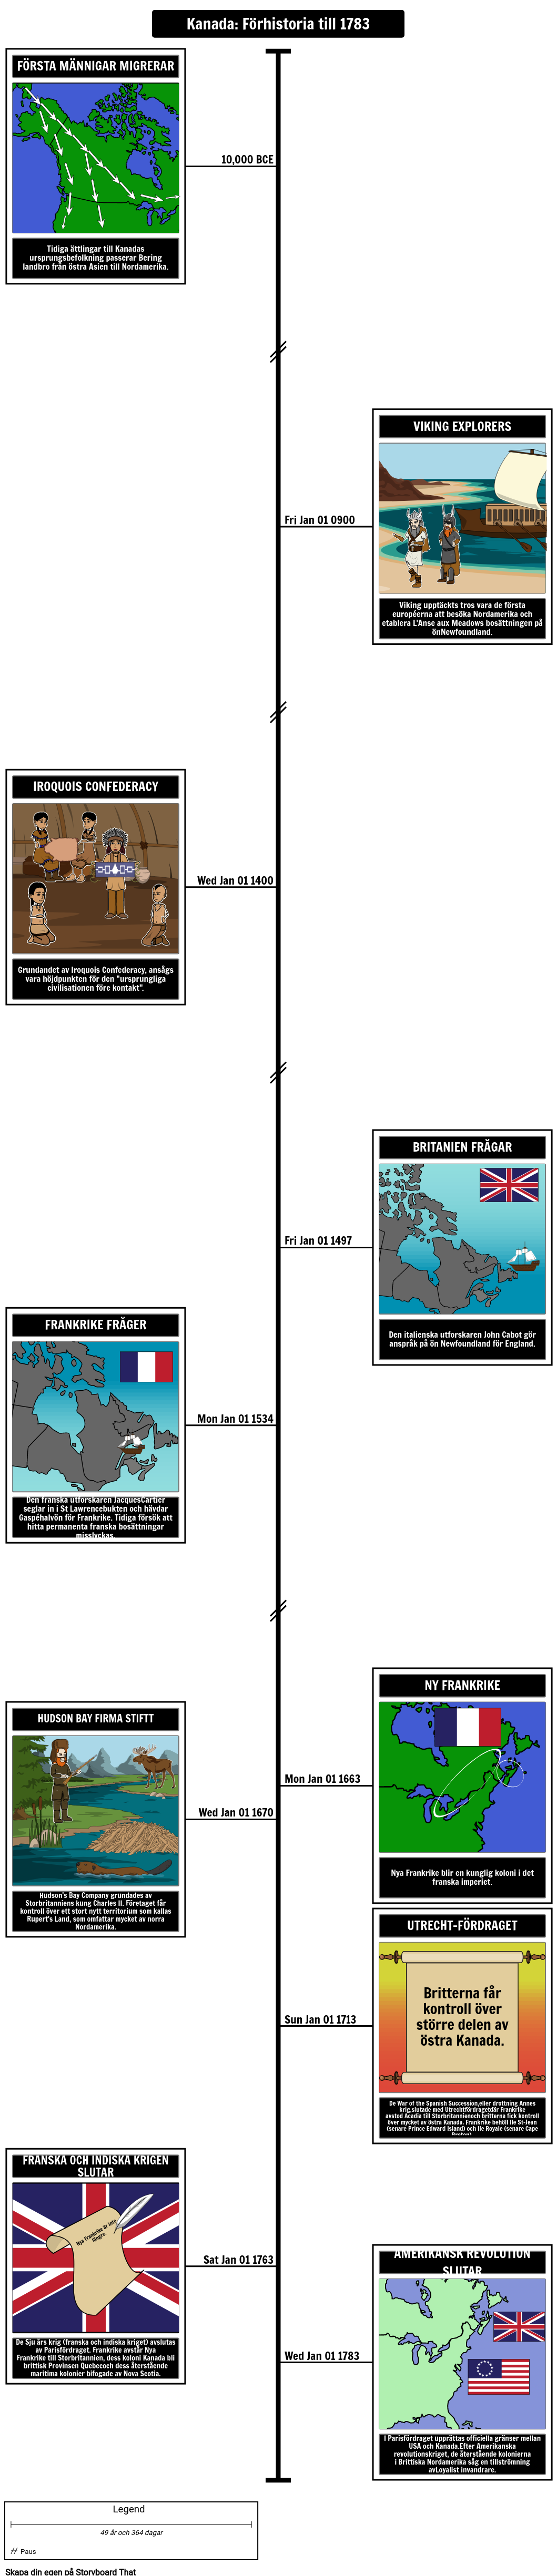 Kanadensisk historia tidslinje före historia till 1783